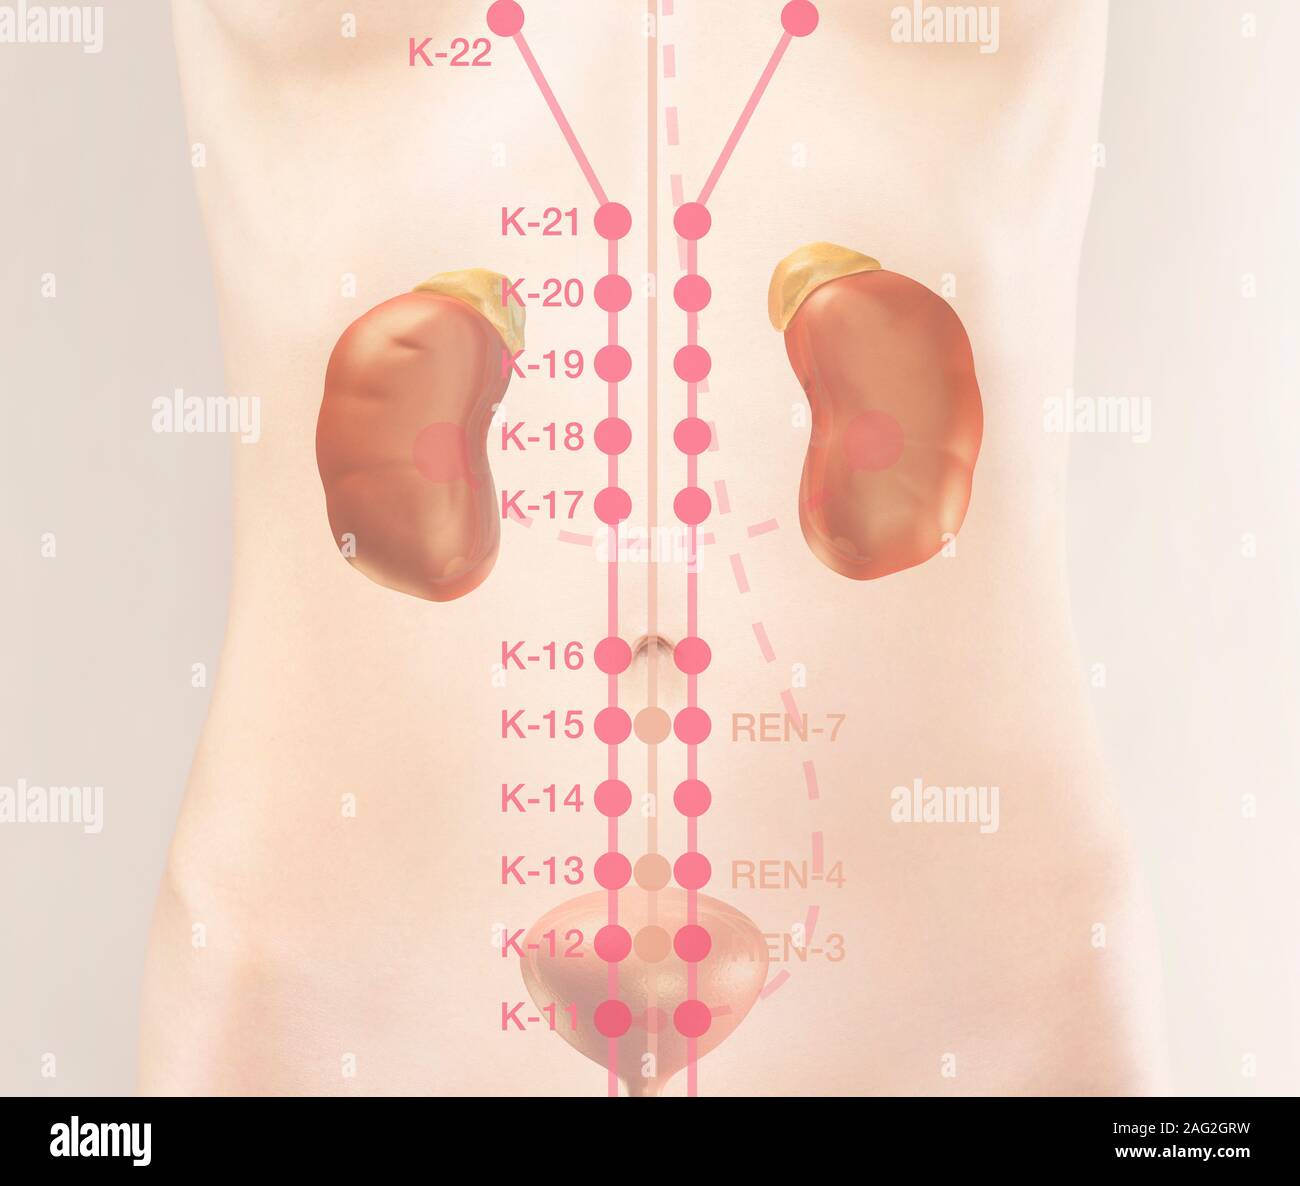 TCM frammento del canale del rene e punti meridiani del corpo umano. Medicina Tradizionale Cinese illustrazione dei punti di agopuntura, K-11, K-12, K-13, K Foto Stock